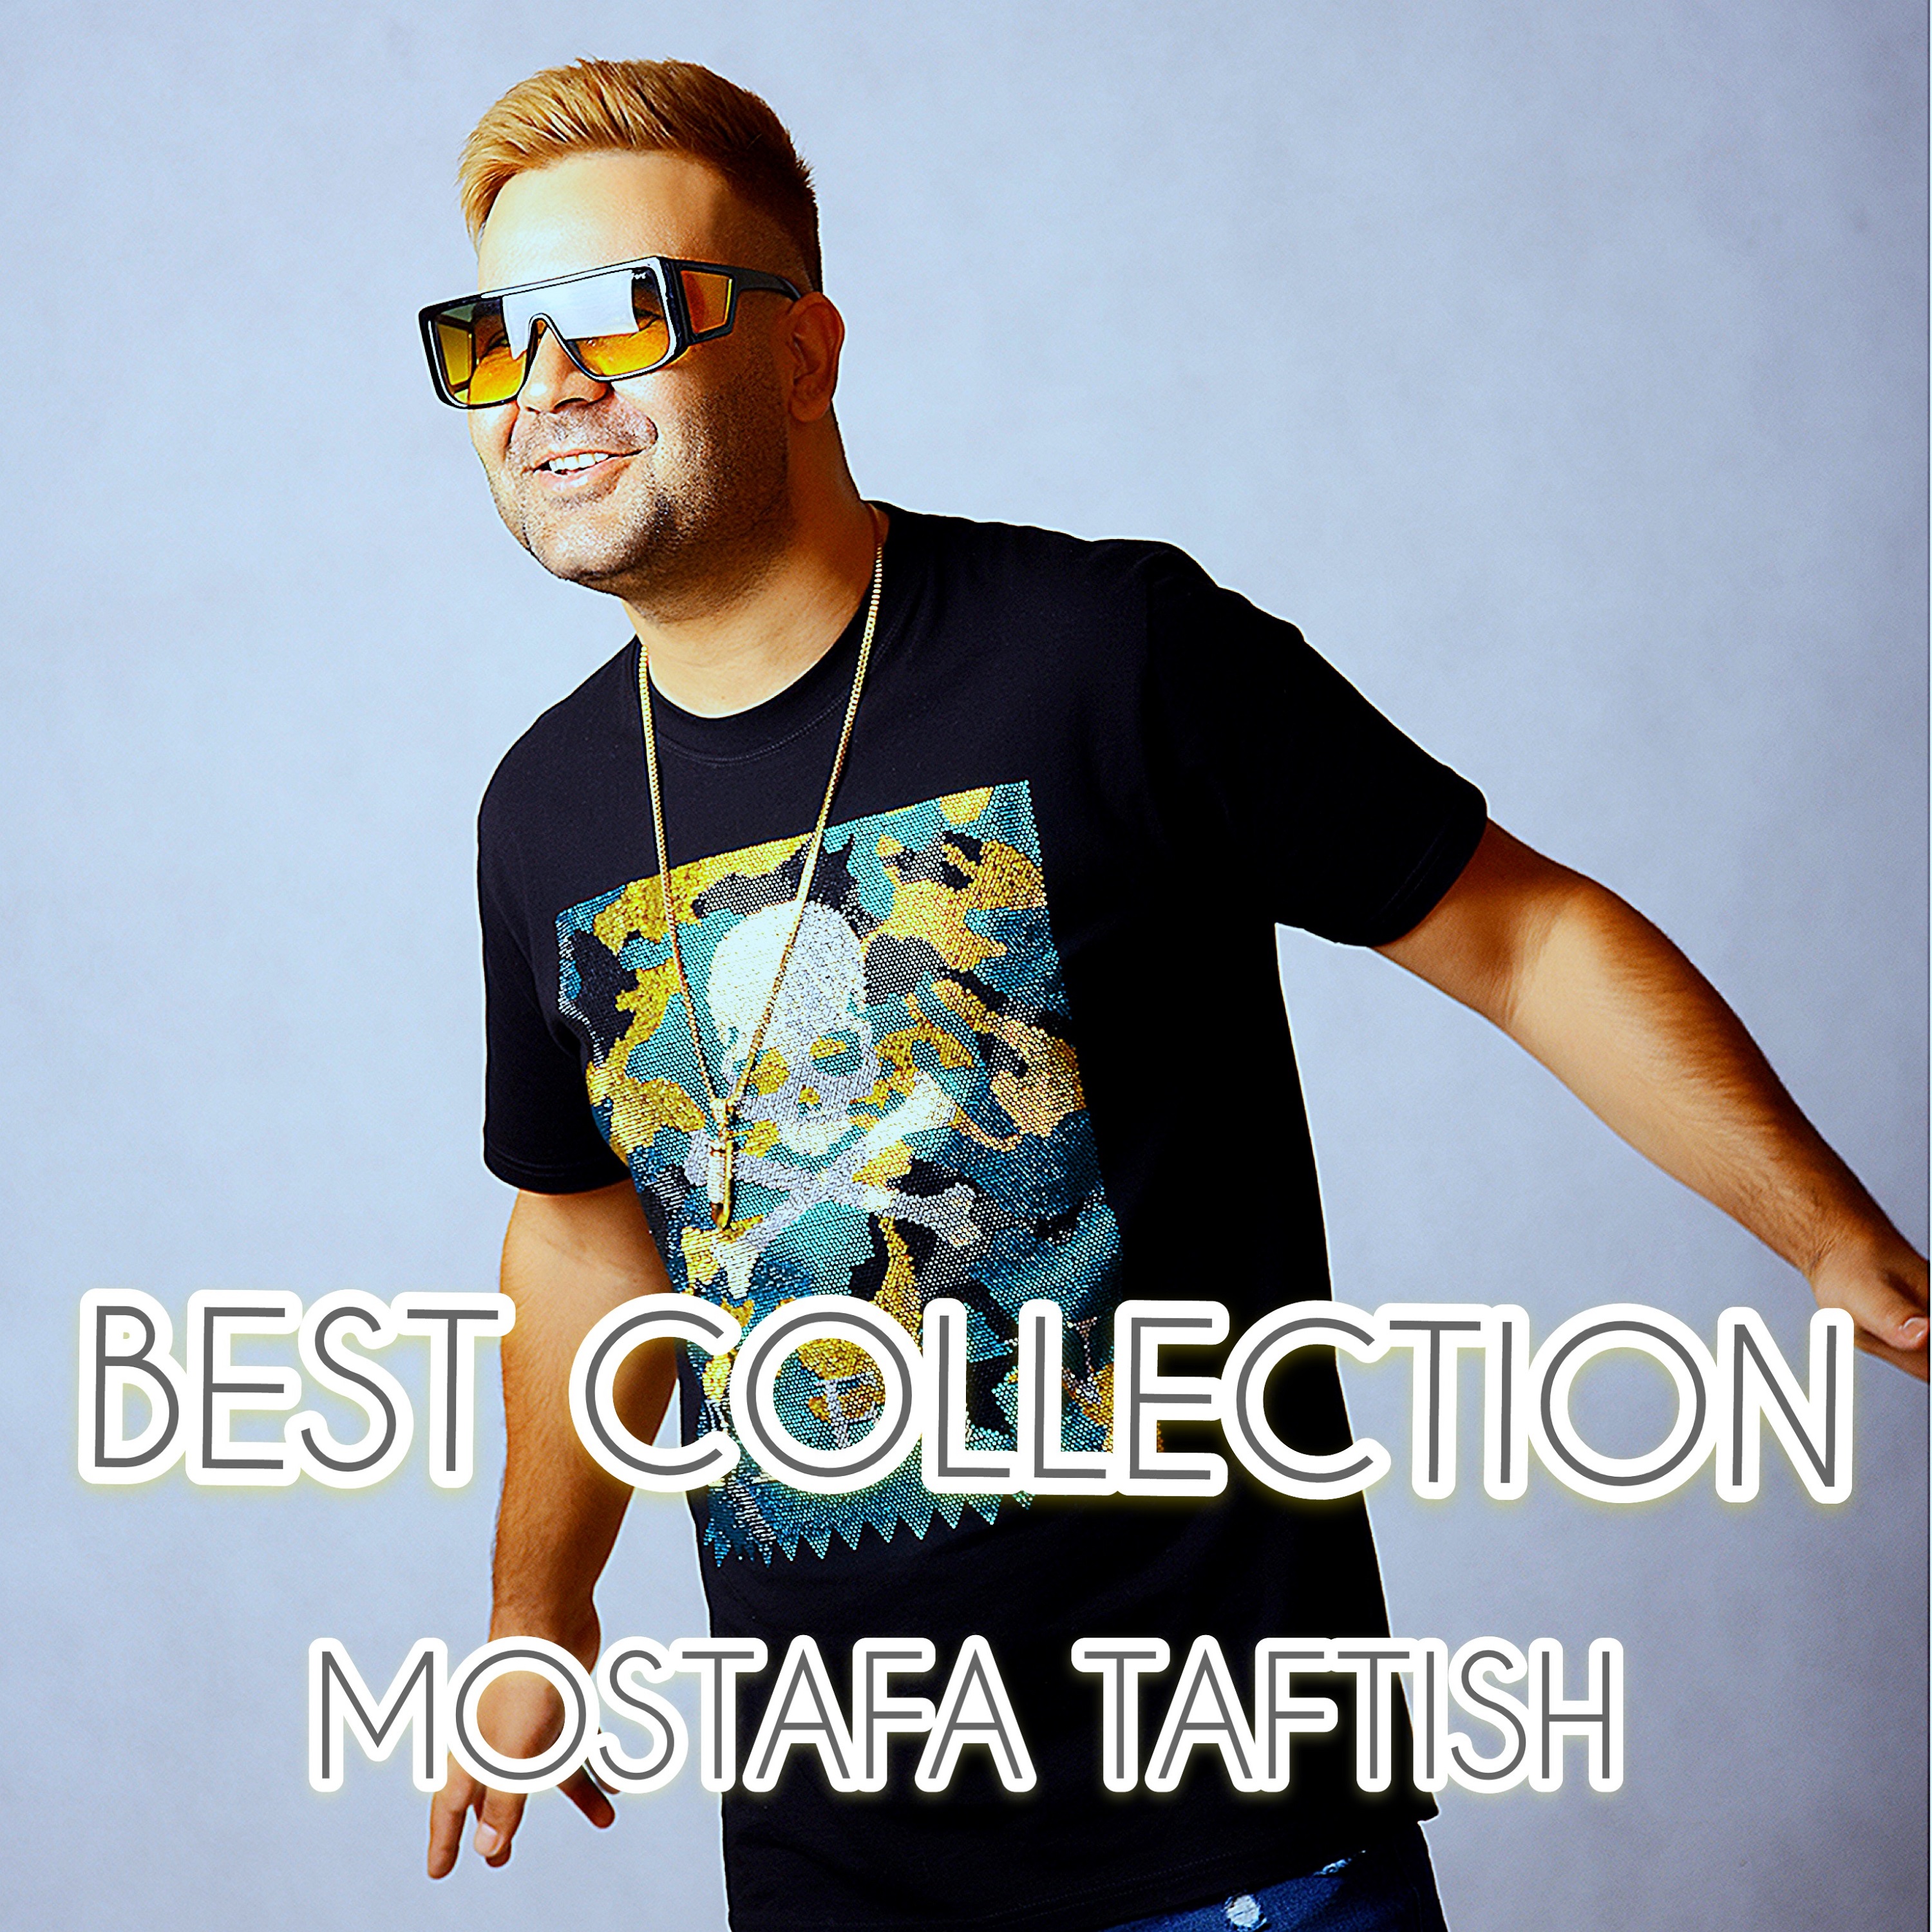  دانلود آهنگ جدید مصطفی تفتیش - عشق آره اینه | Download New Music By Mostafa Taftish - Eshgh Are Ine (feat. Nasim)